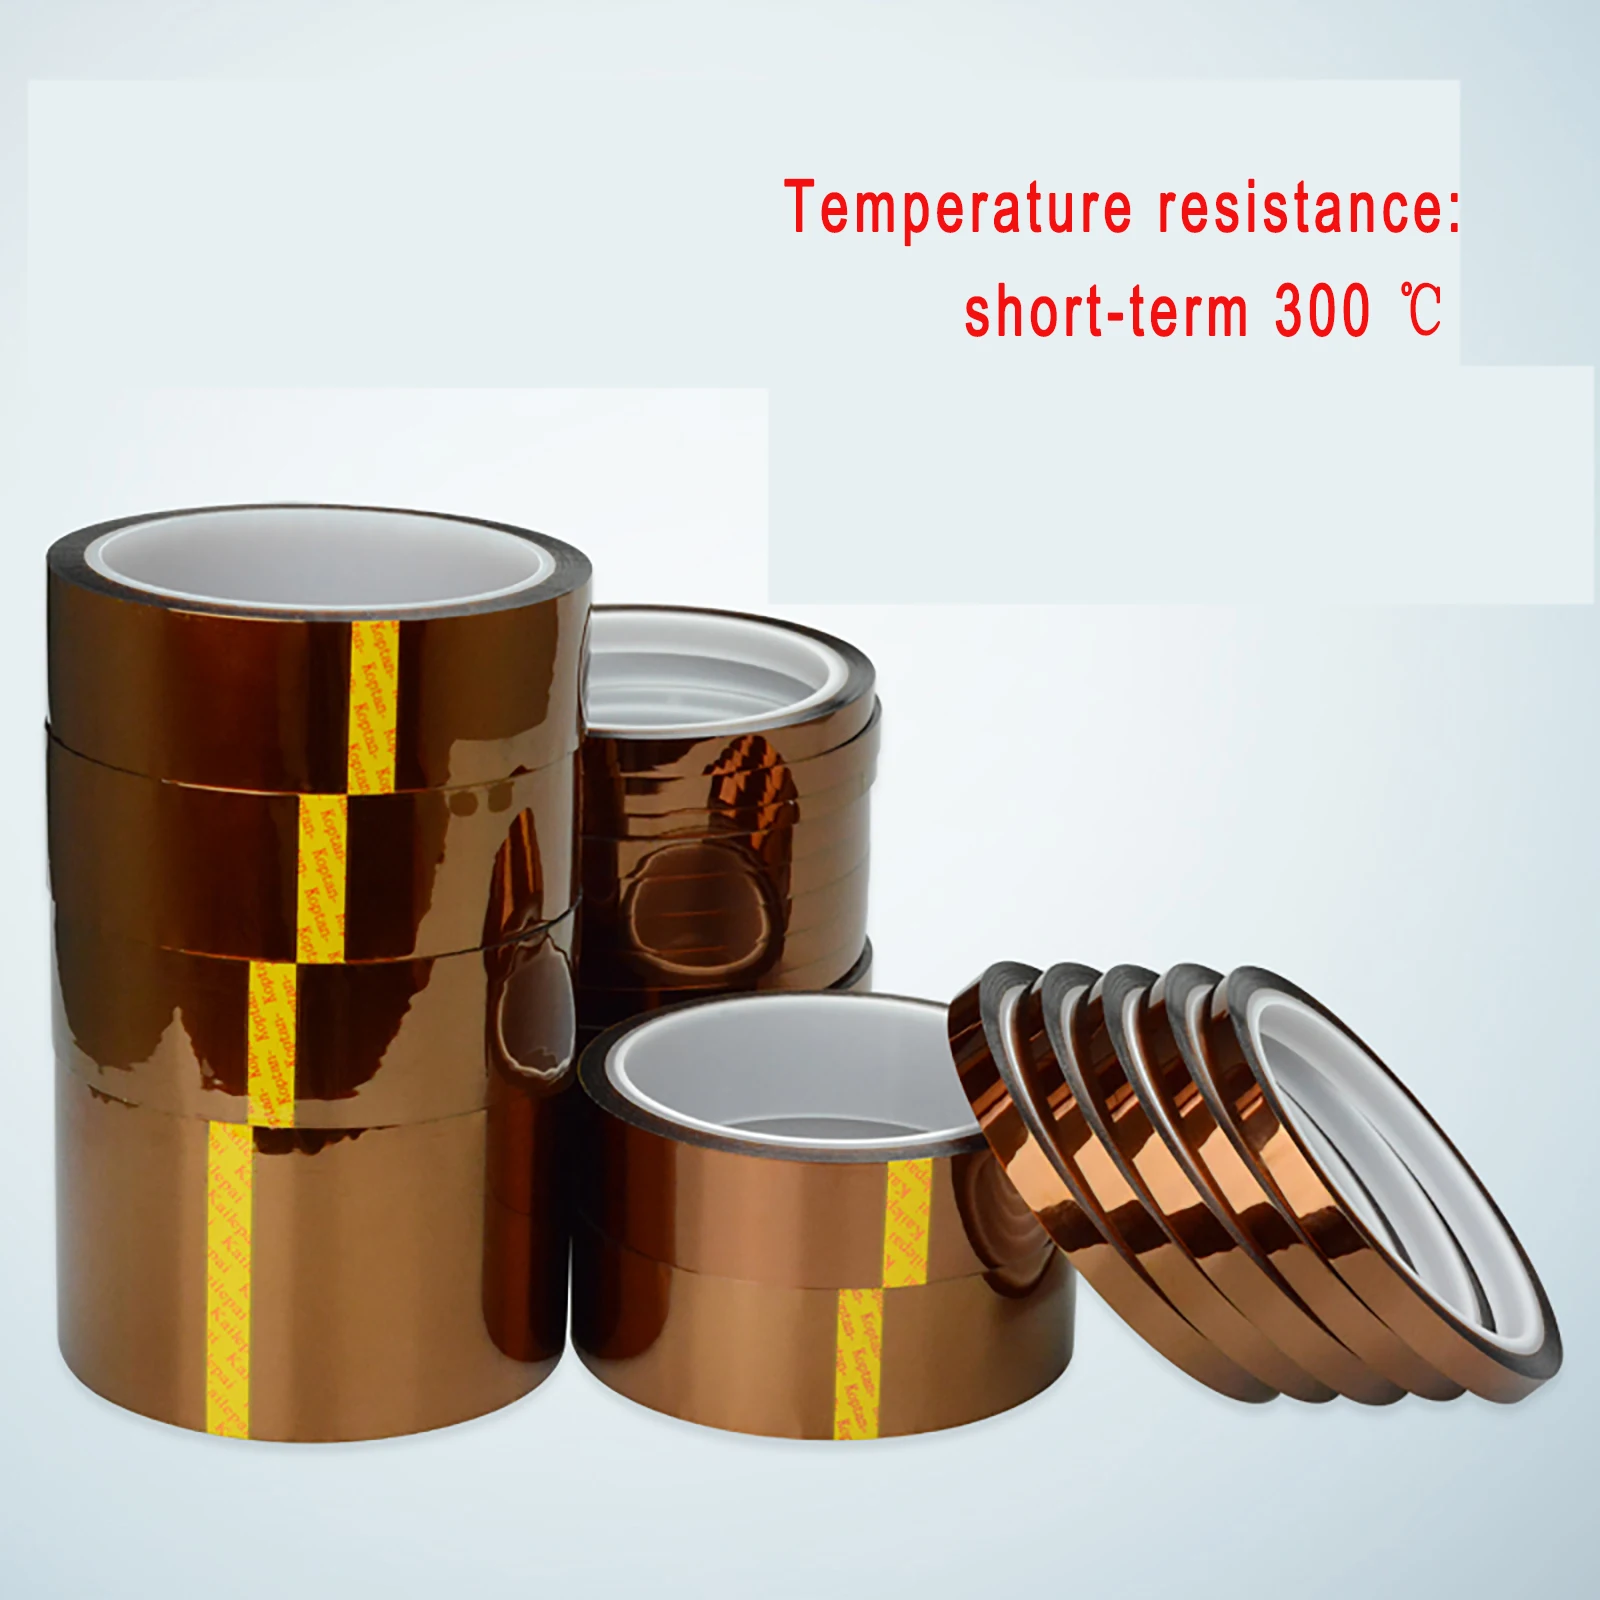 33 м/рулон каптон клейкая лента Высокая температура термостойкий Полиимид 0,055 мм толщина 300℃